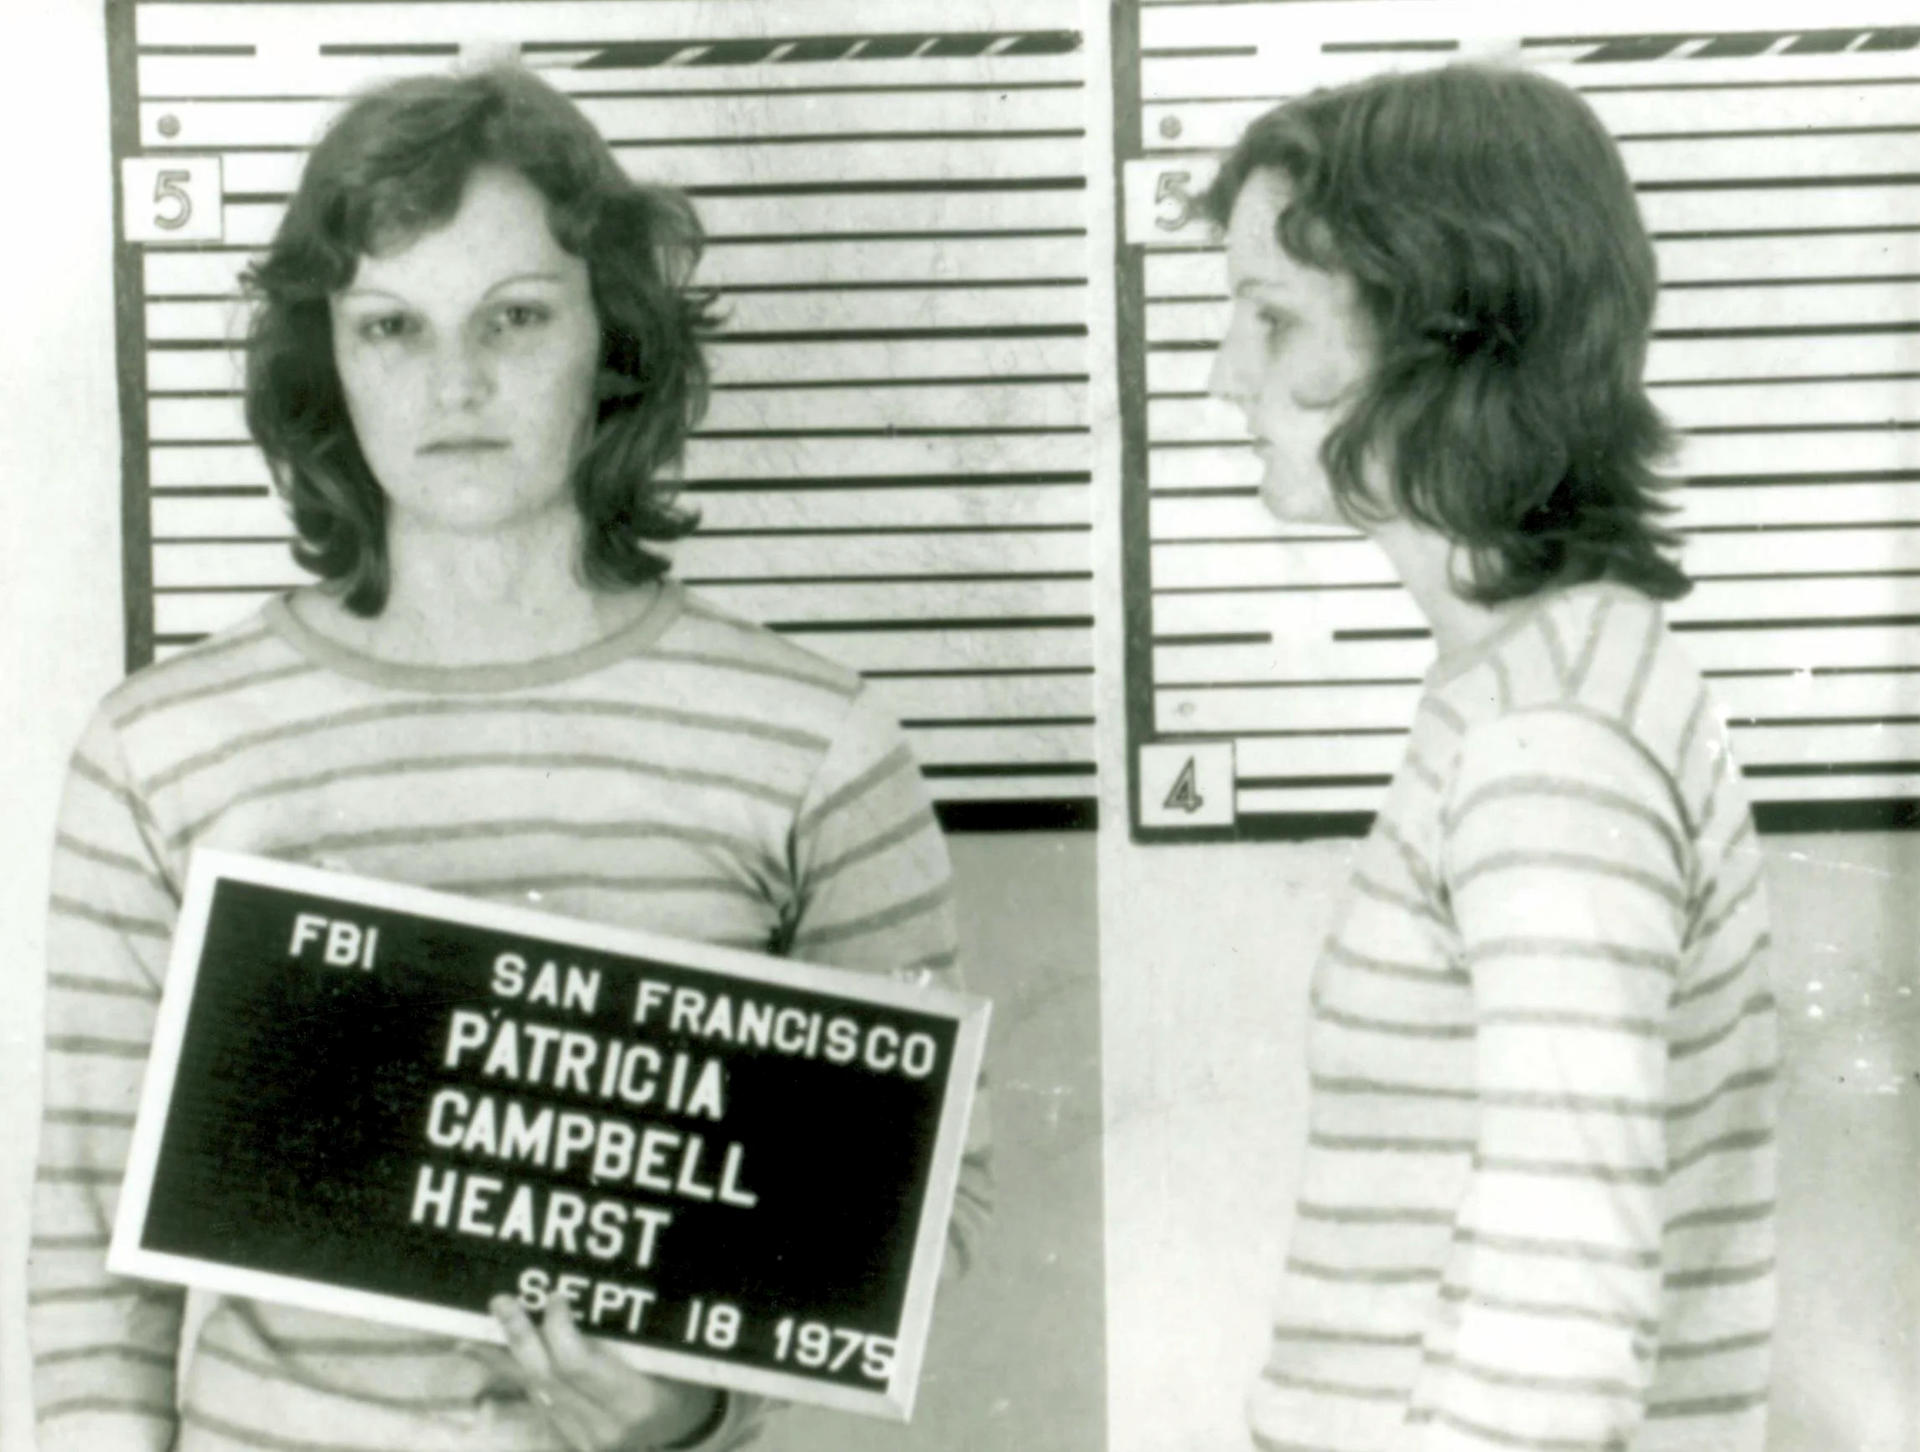 Fotografía divulgada por el FBI donde se muestra una composición de dos fotografías de registro policial de Patricia Campbell Hearst tras su arresto el 18 de septiembre de 1975 en San Francisco, California (EE.UU.). EFE/FBI